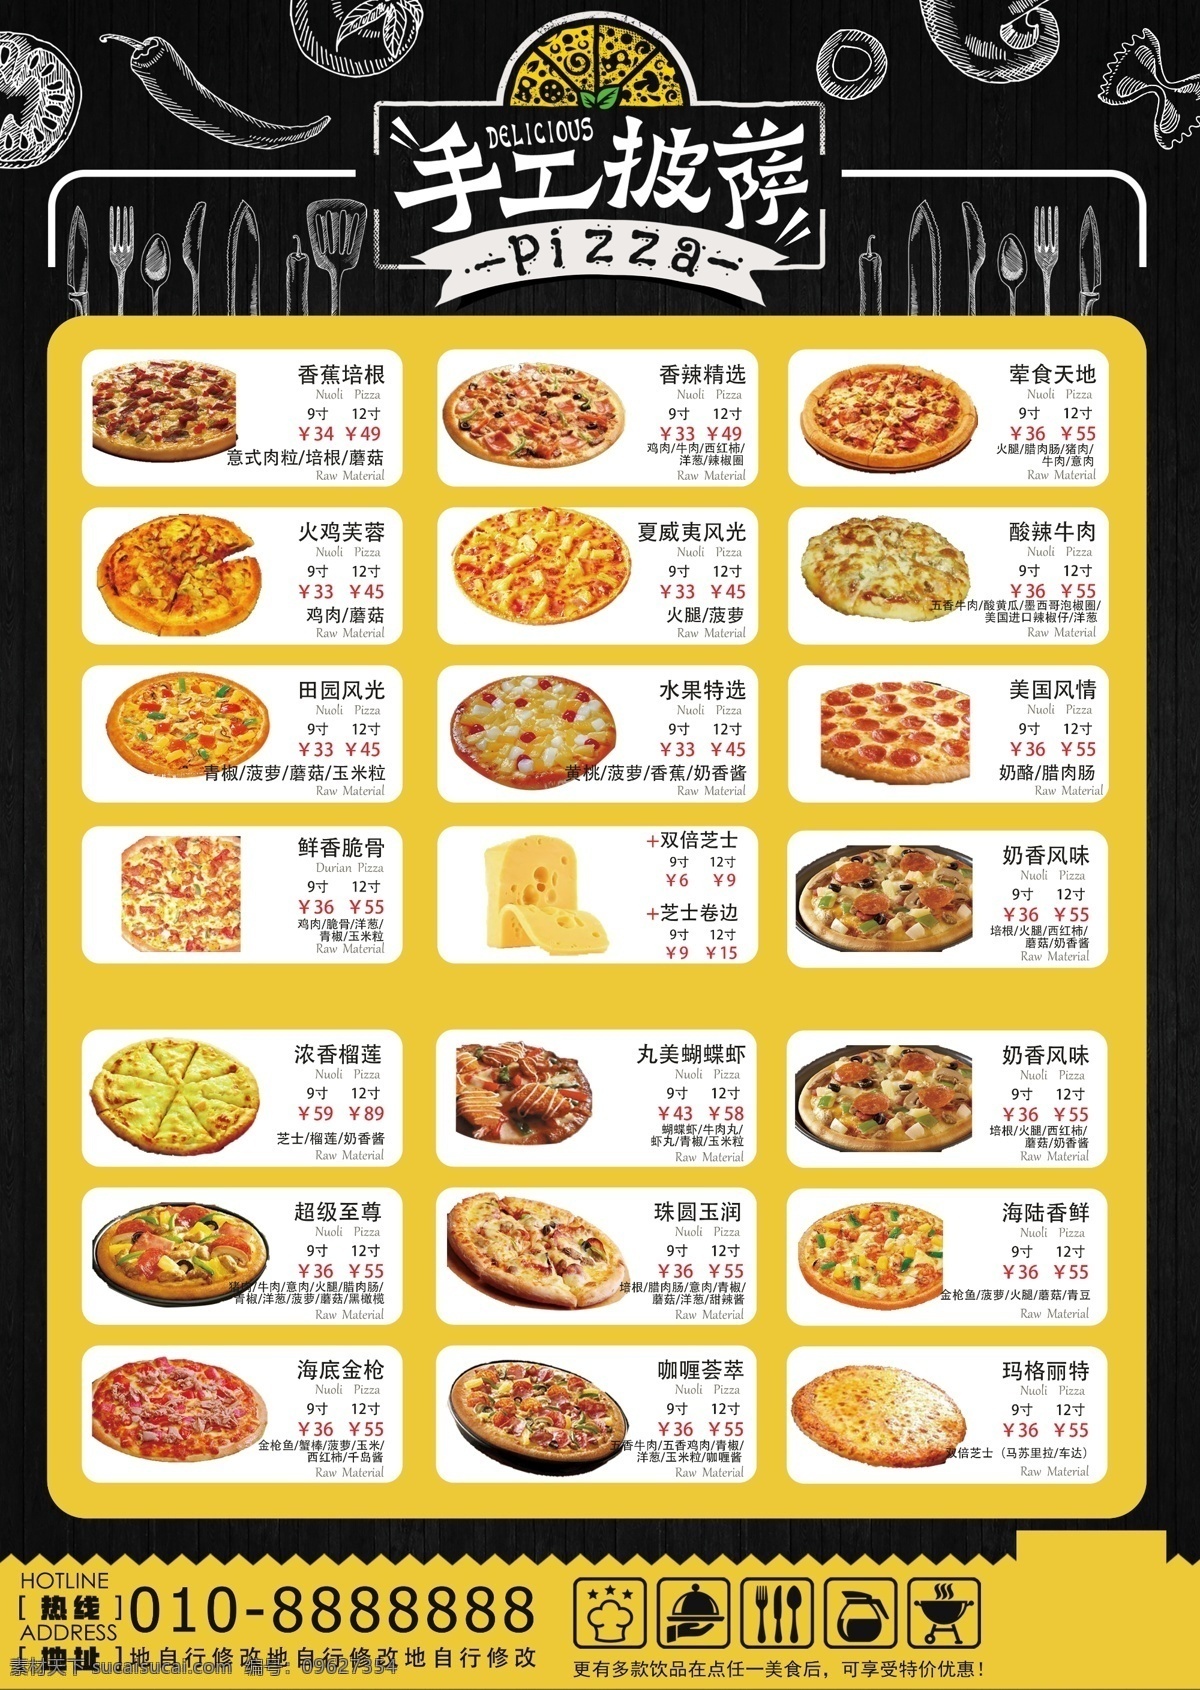 披萨菜单图片 披萨 比萨 披萨菜单 披萨制作 披萨海报 披萨展板 比萨灯箱 披萨文化 披萨促销 披萨西餐 披萨快餐 披萨加盟 披萨店 披萨包装 披萨美食 西式披萨 披萨价格表 披萨外卖 披萨画 快餐菜单 正宗披萨 披萨饼 披萨传单 意大利披萨